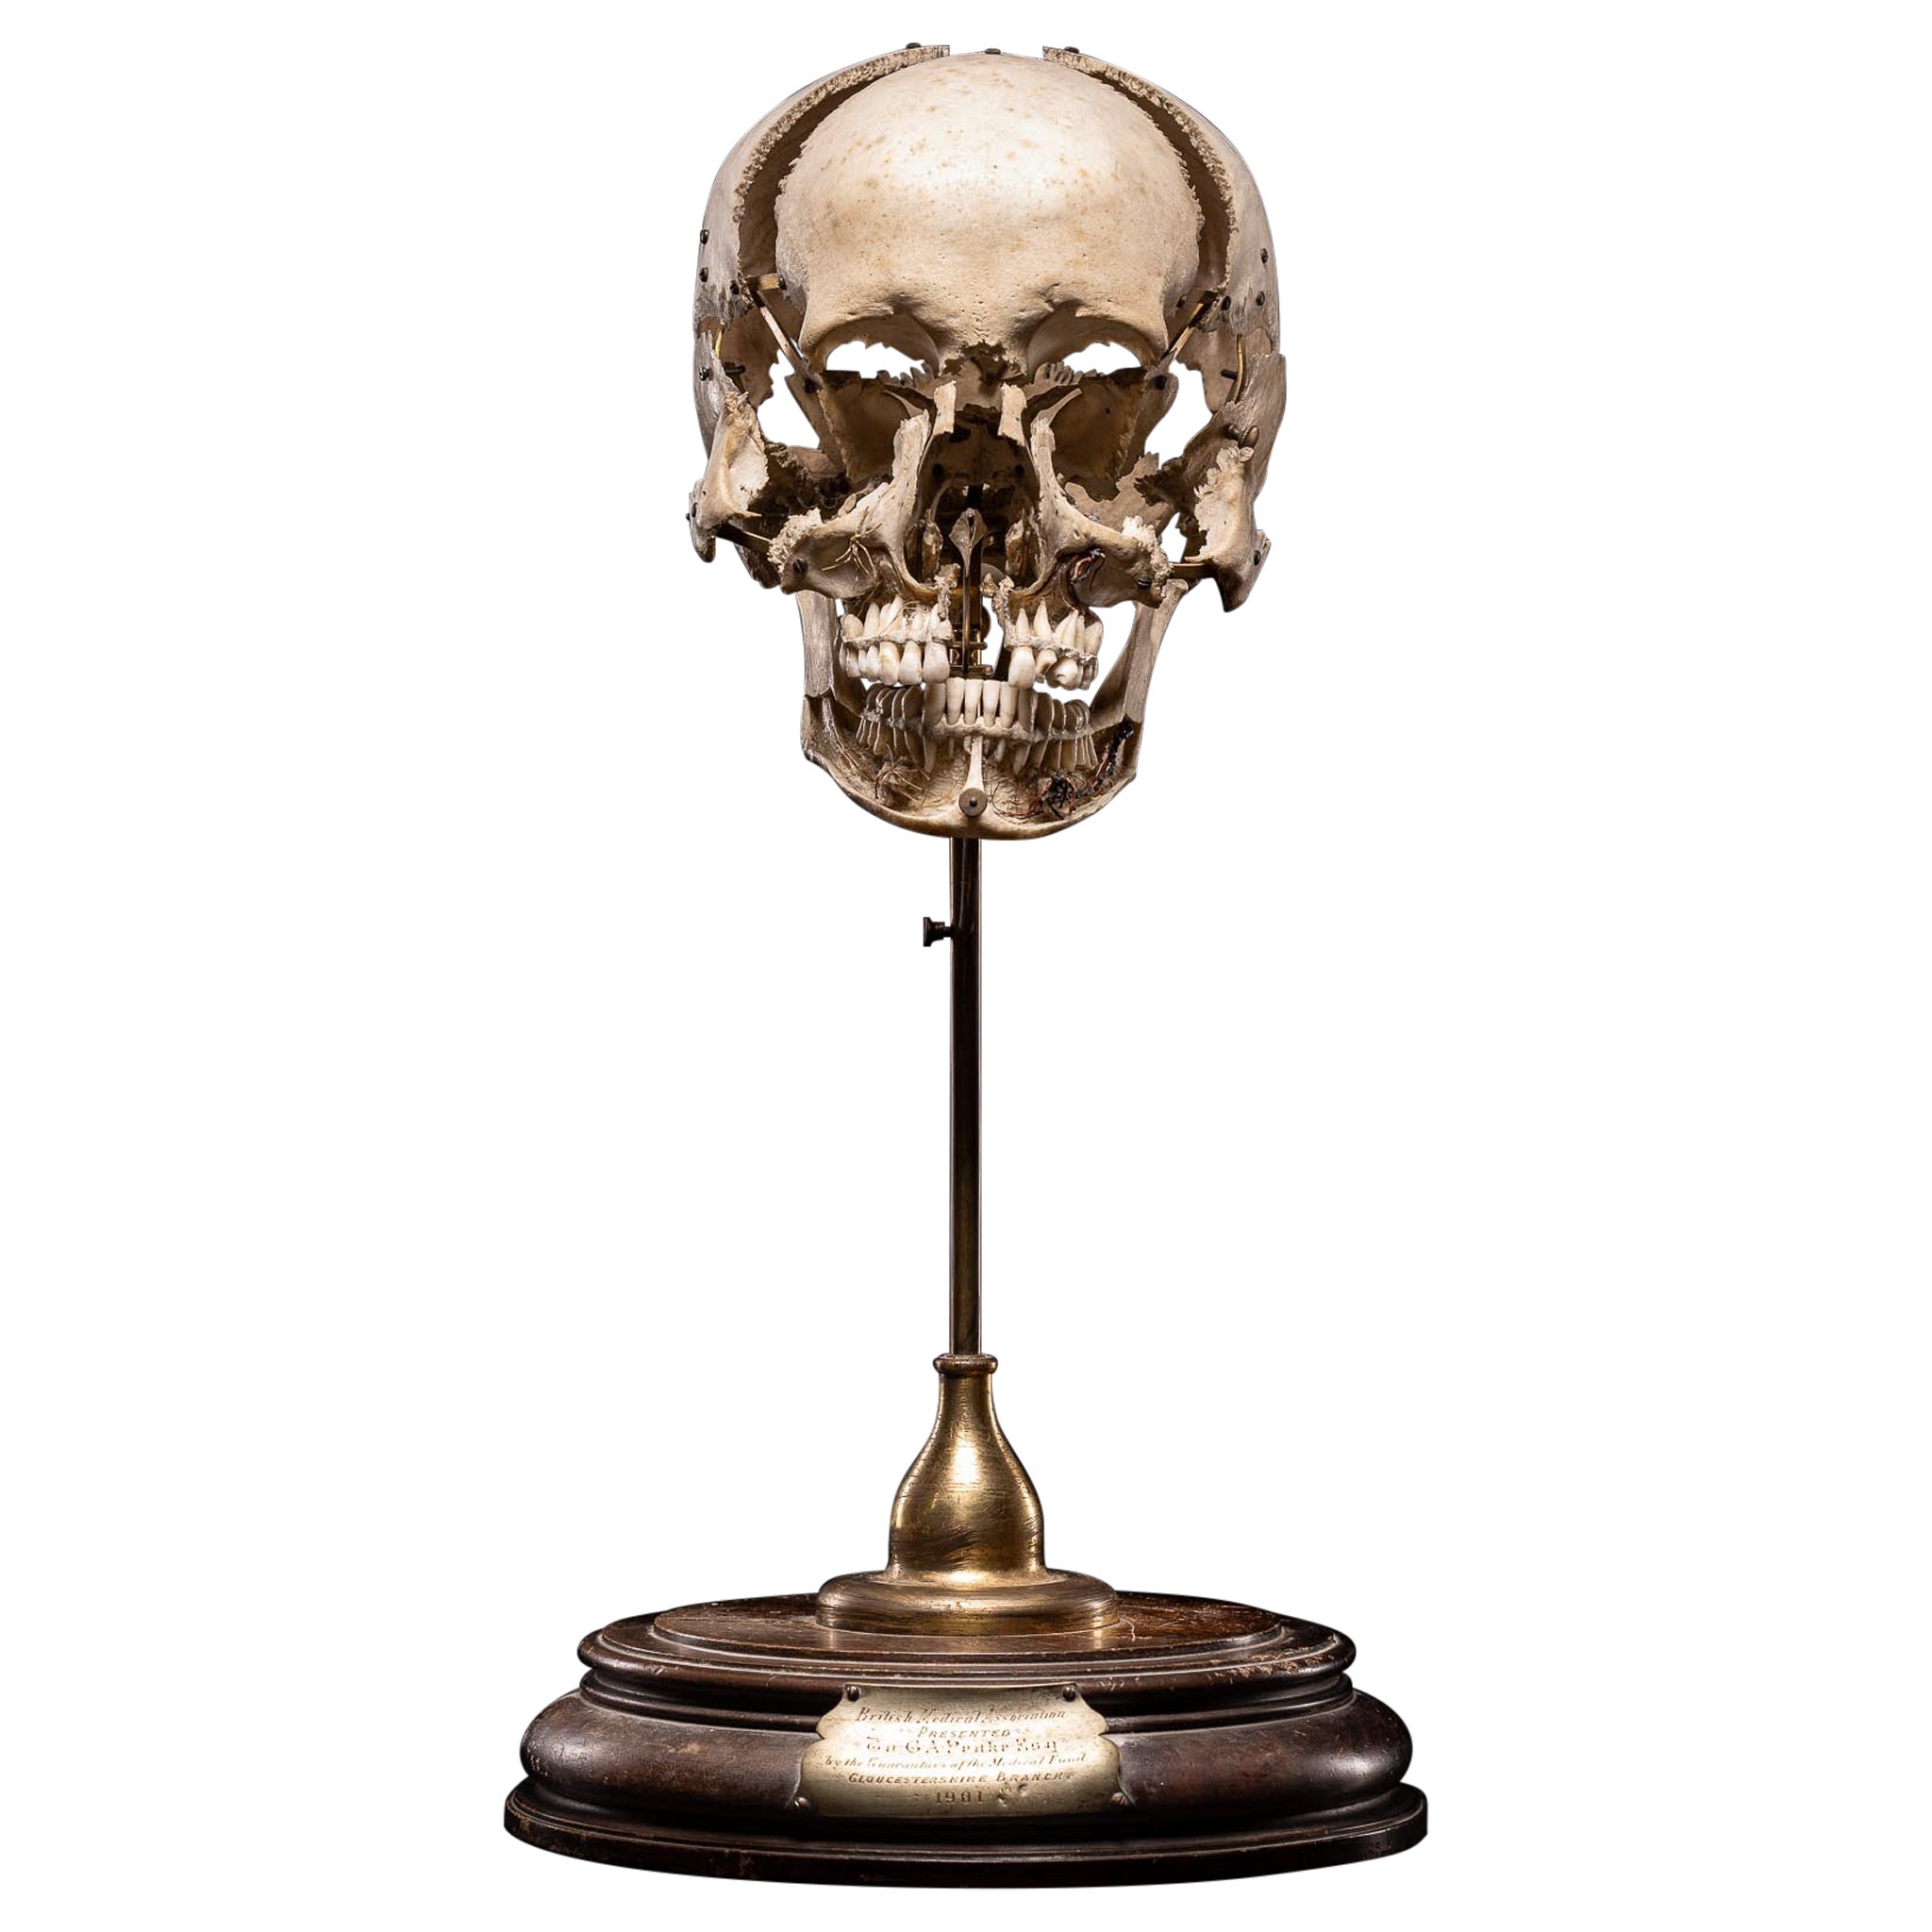 Crâne humain désarticulé d'Edmé Beauchêne avec provenance muséale, France